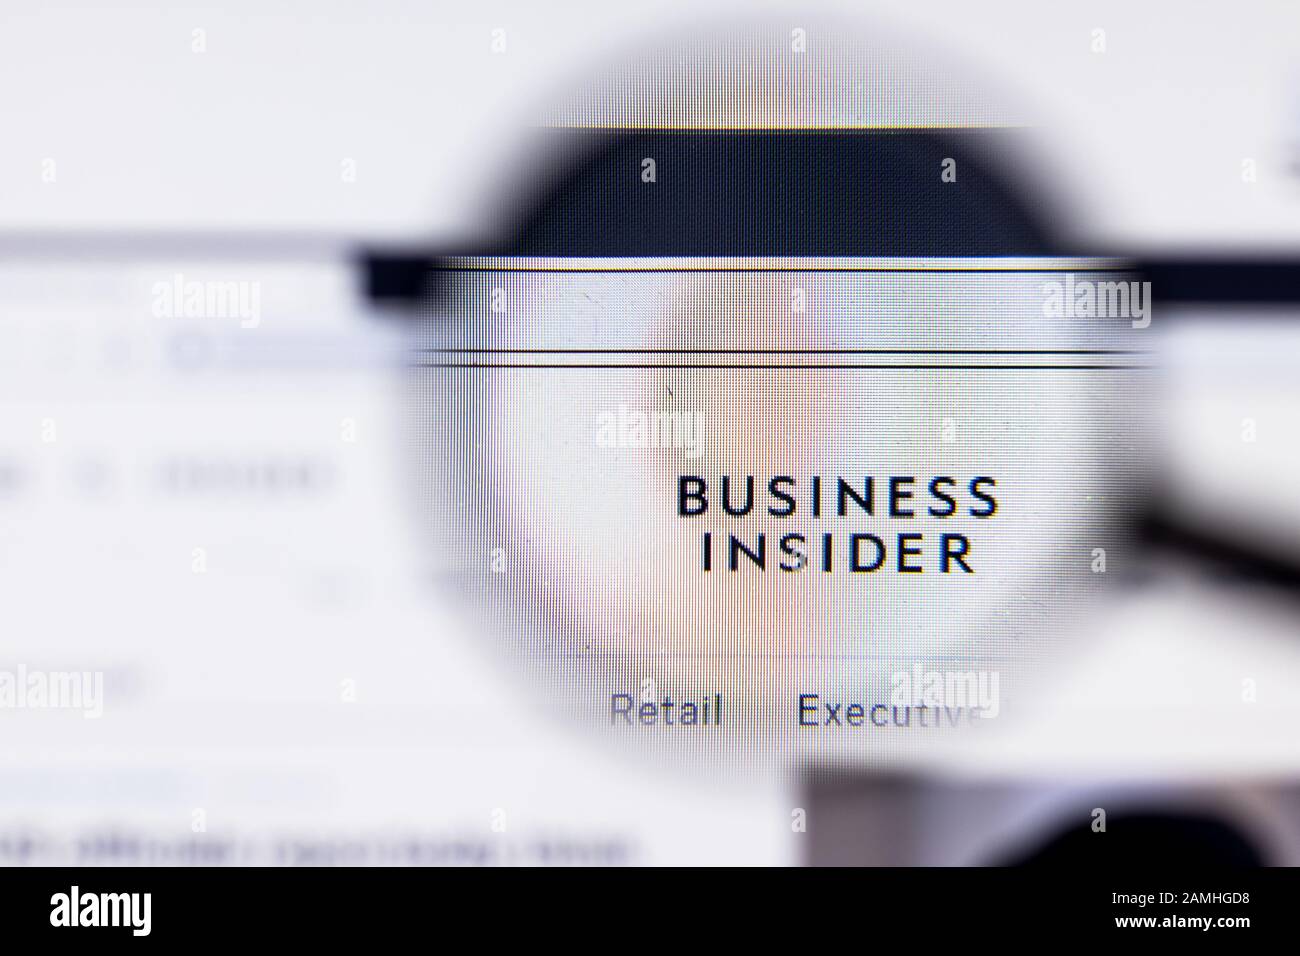 Saint-Pétersbourg, Russie - 10 janvier 2020: Business Insider site web sur l'affichage d'ordinateur portable avec logo, éditorial illustratif Banque D'Images